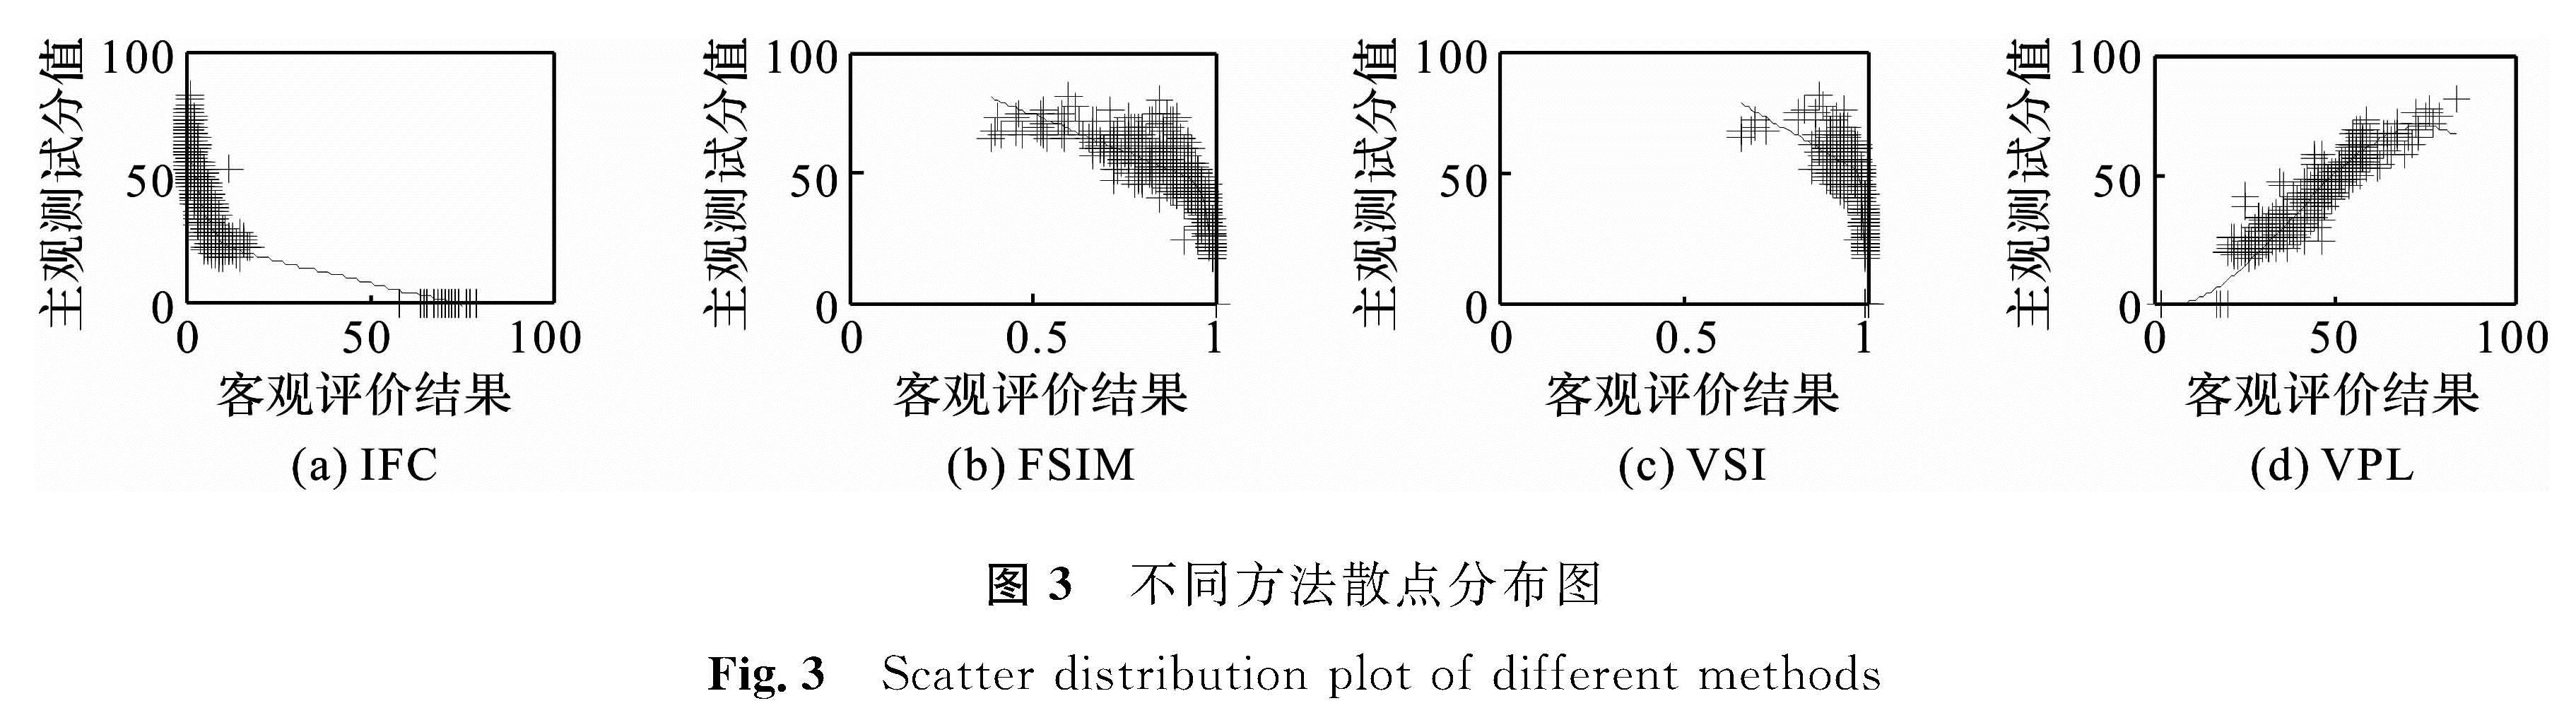 图3 不同方法散点分布图<br/>Fig.3 Scatter distribution plot of different methods